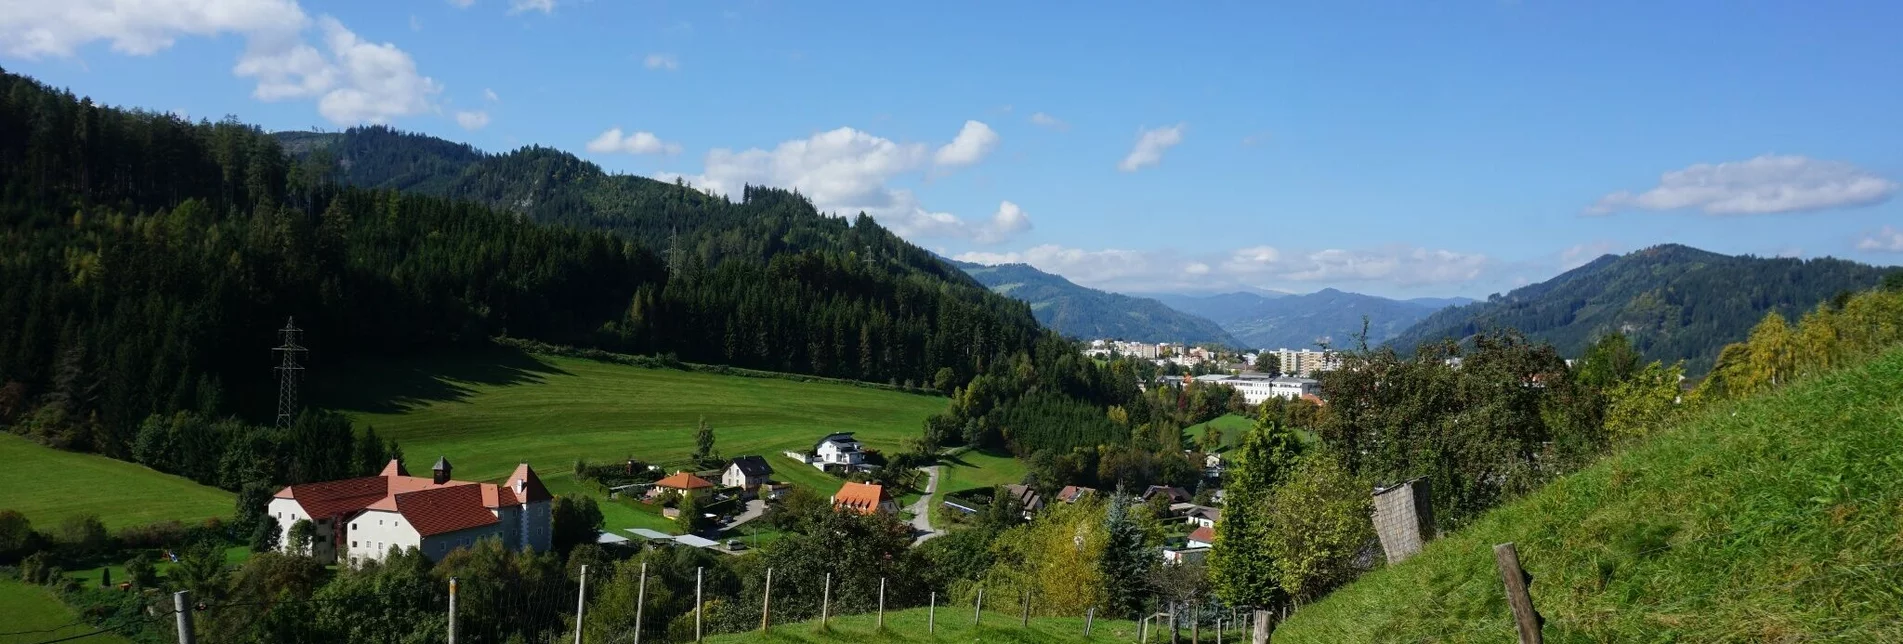 Wanderung Wanderung um den Liechtensteinberg - Touren-Impression #1 | © Erlebnisregion Murtal